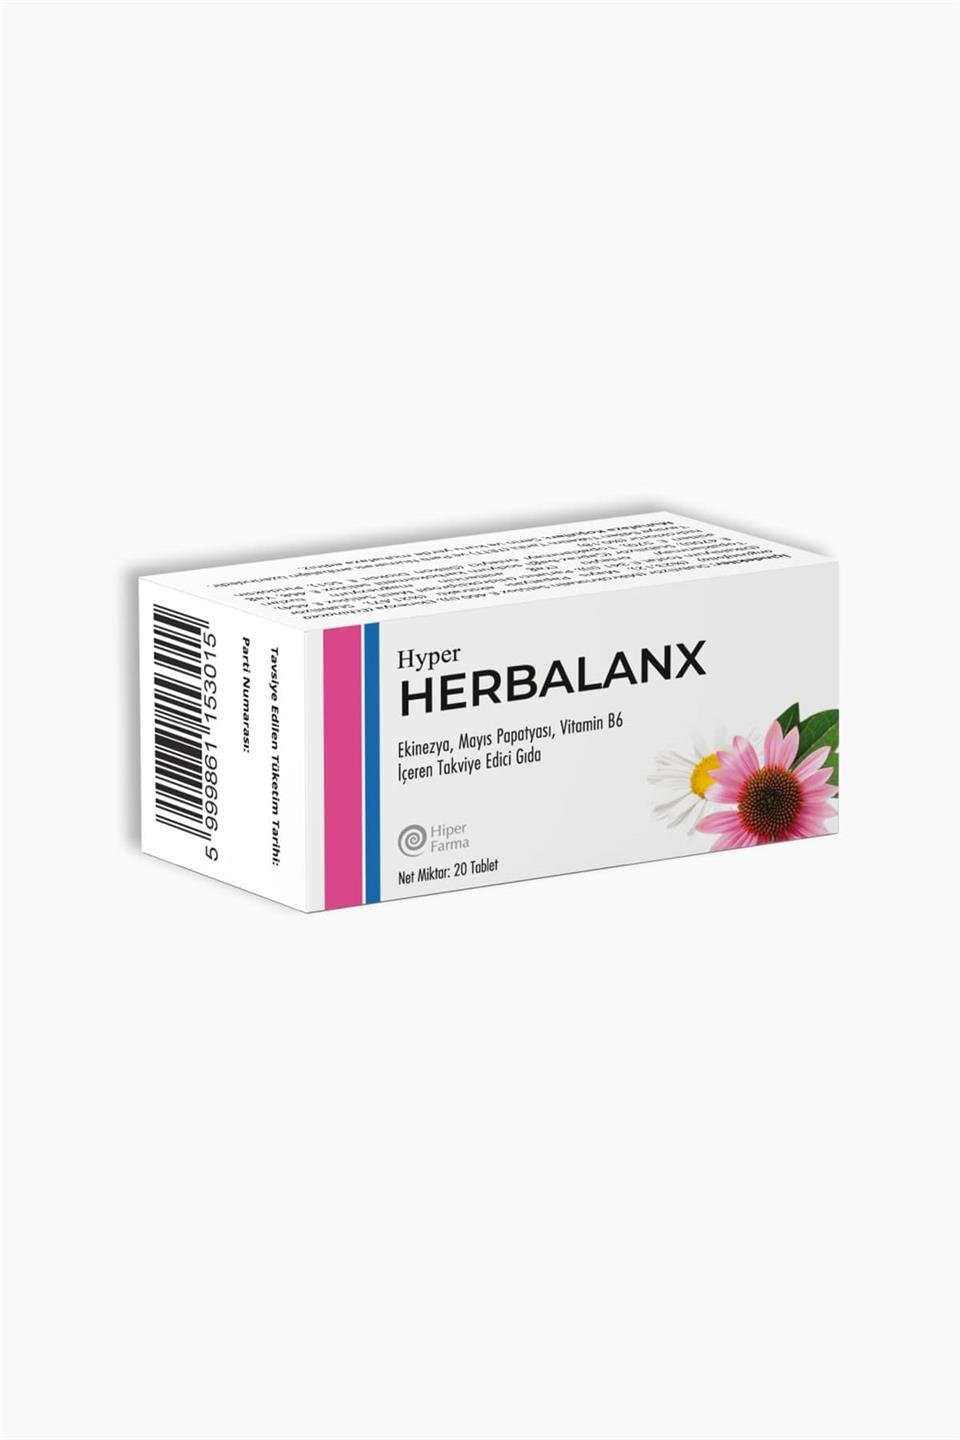 Hyper Herbalanx Ekinezya Mayıs Papatyası Vitamin B6 Tablet 20 Li Fiyatı |  Farmakozmetika